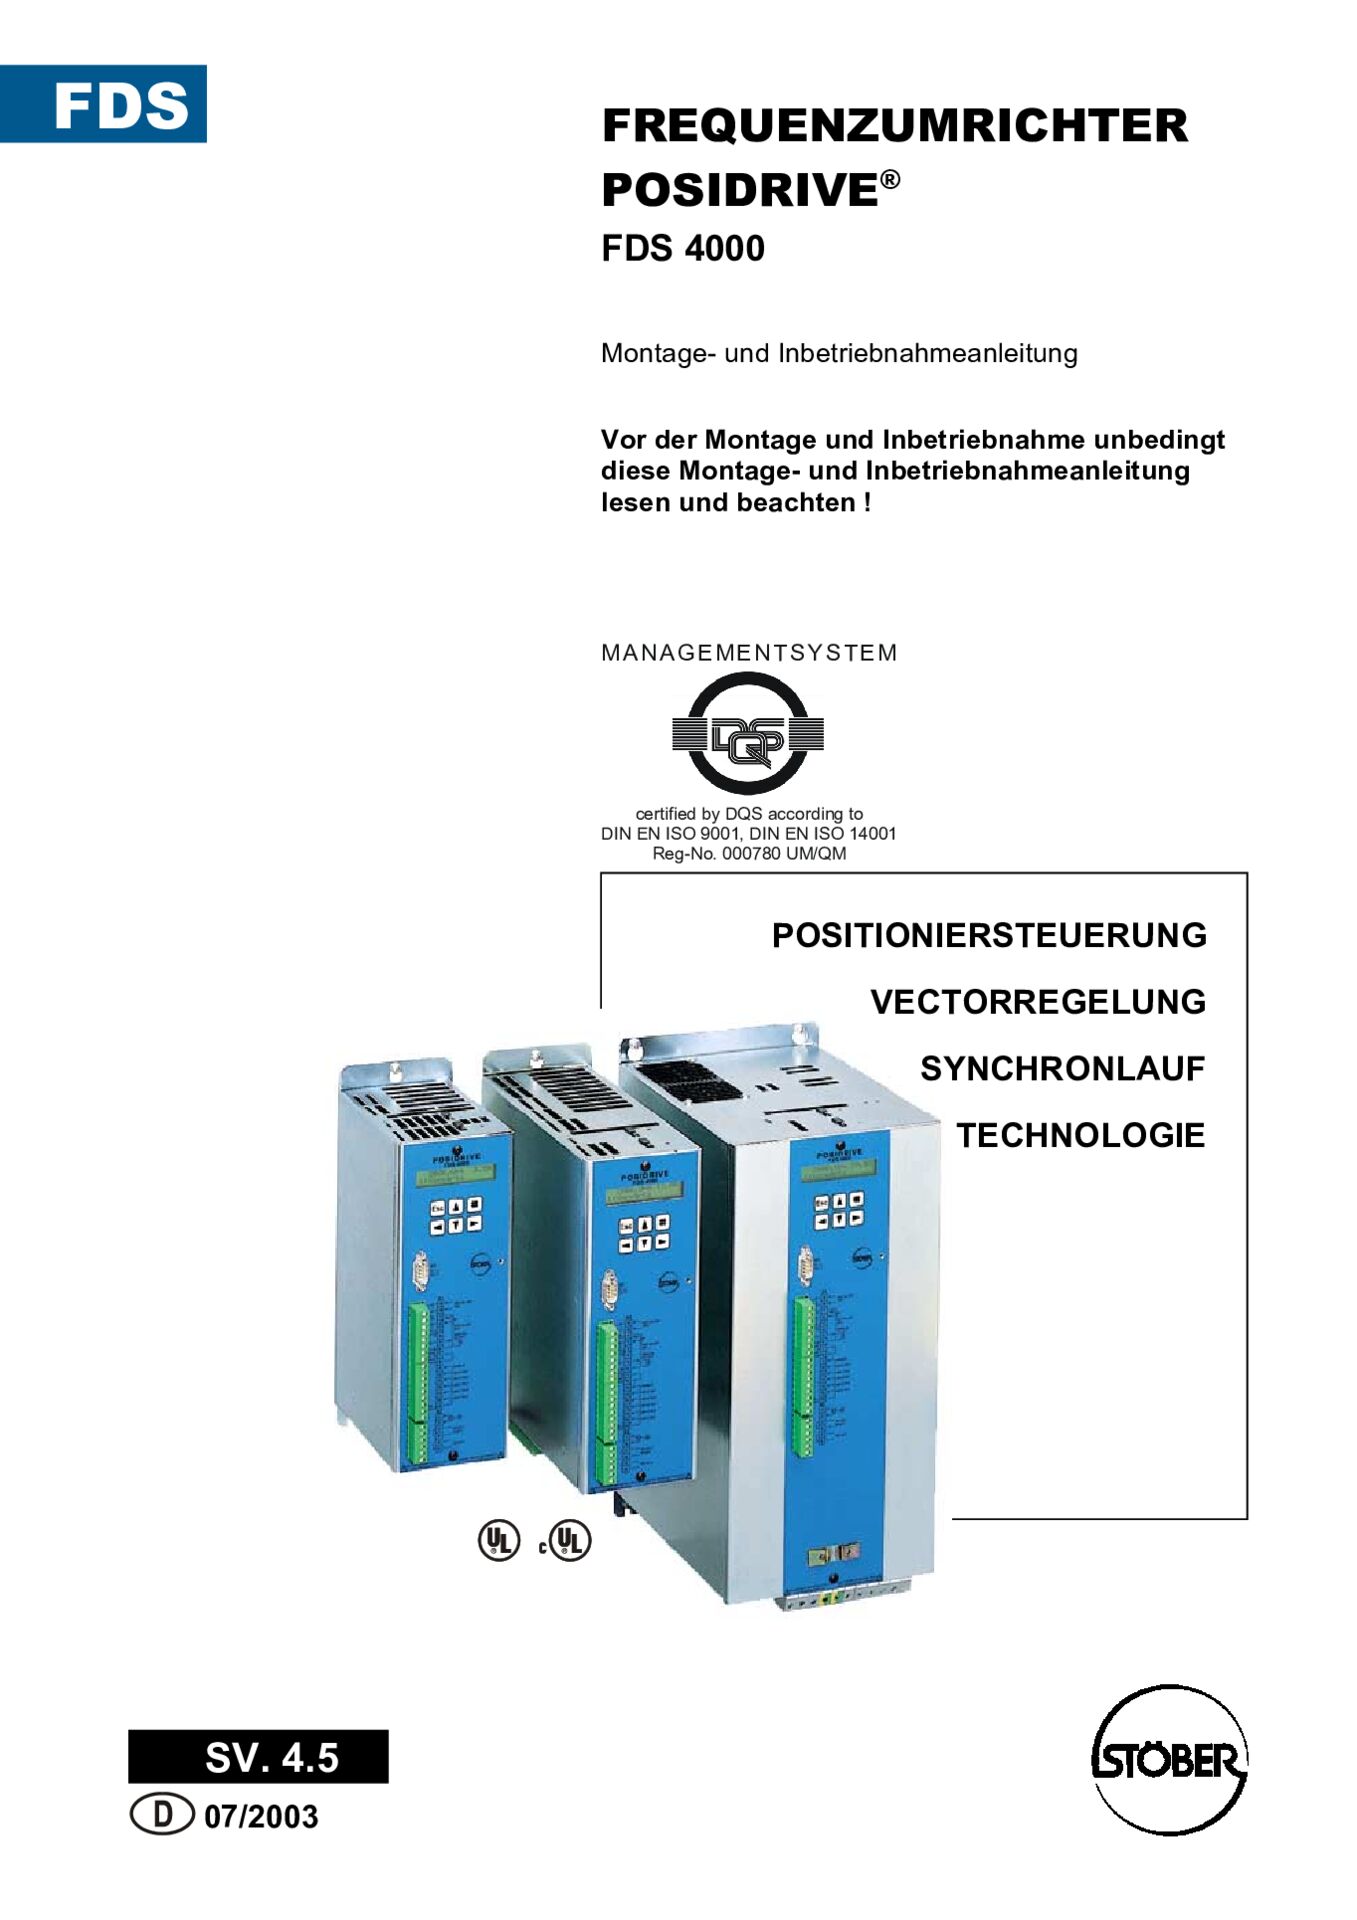 Montage- und Inbetriebnahmeanleitung Frequenzumrichter POSIDRIVE FDS 4000 SV 4.5